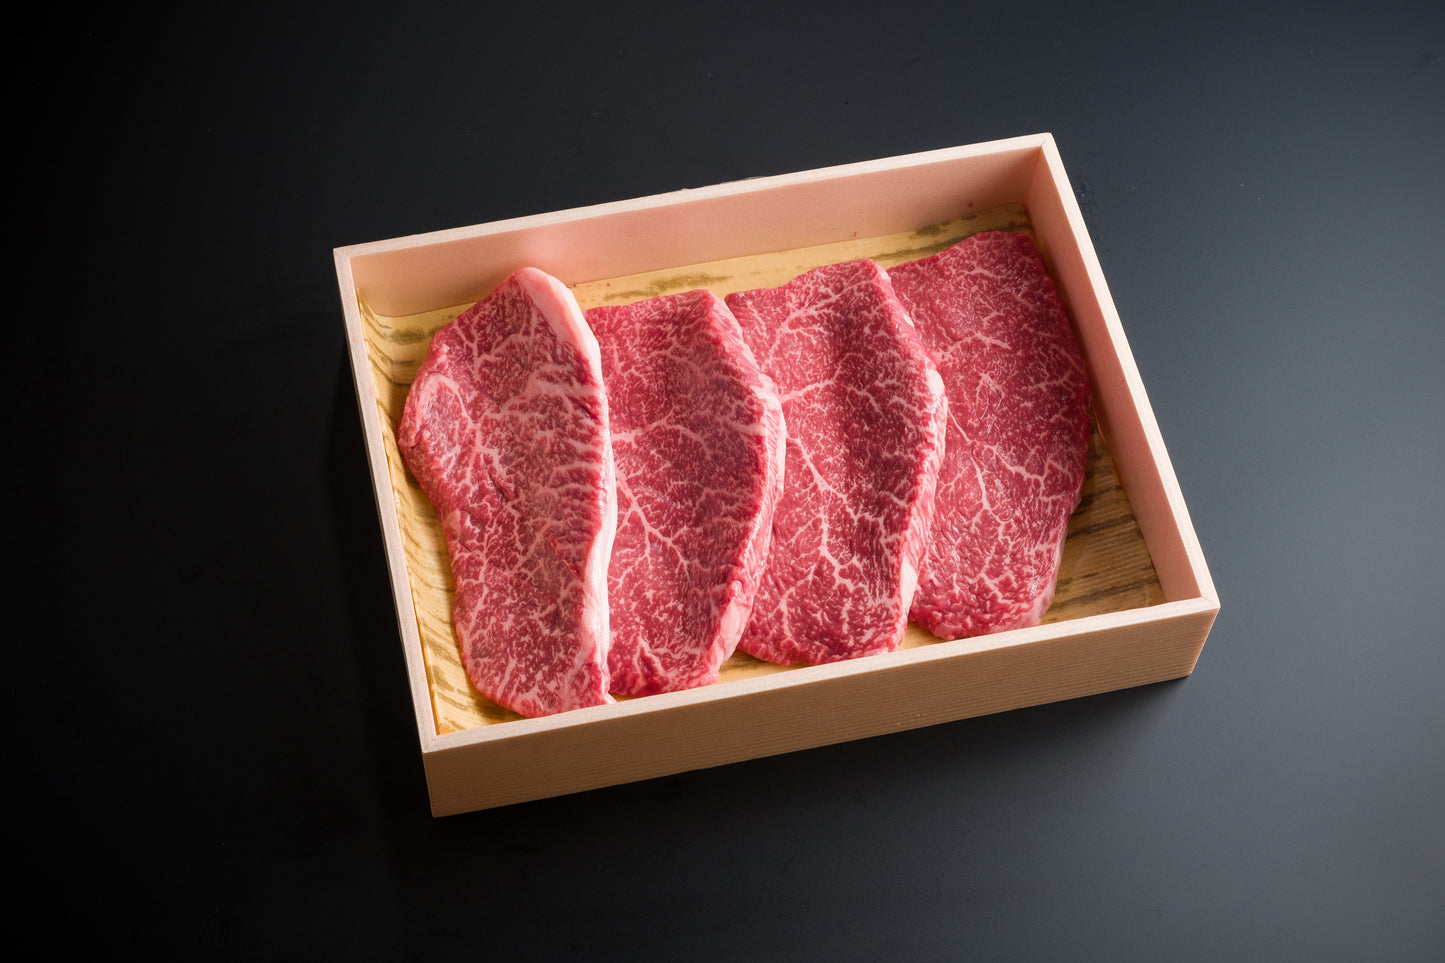 鳥取和牛ももステーキ 約600g (150g×4)